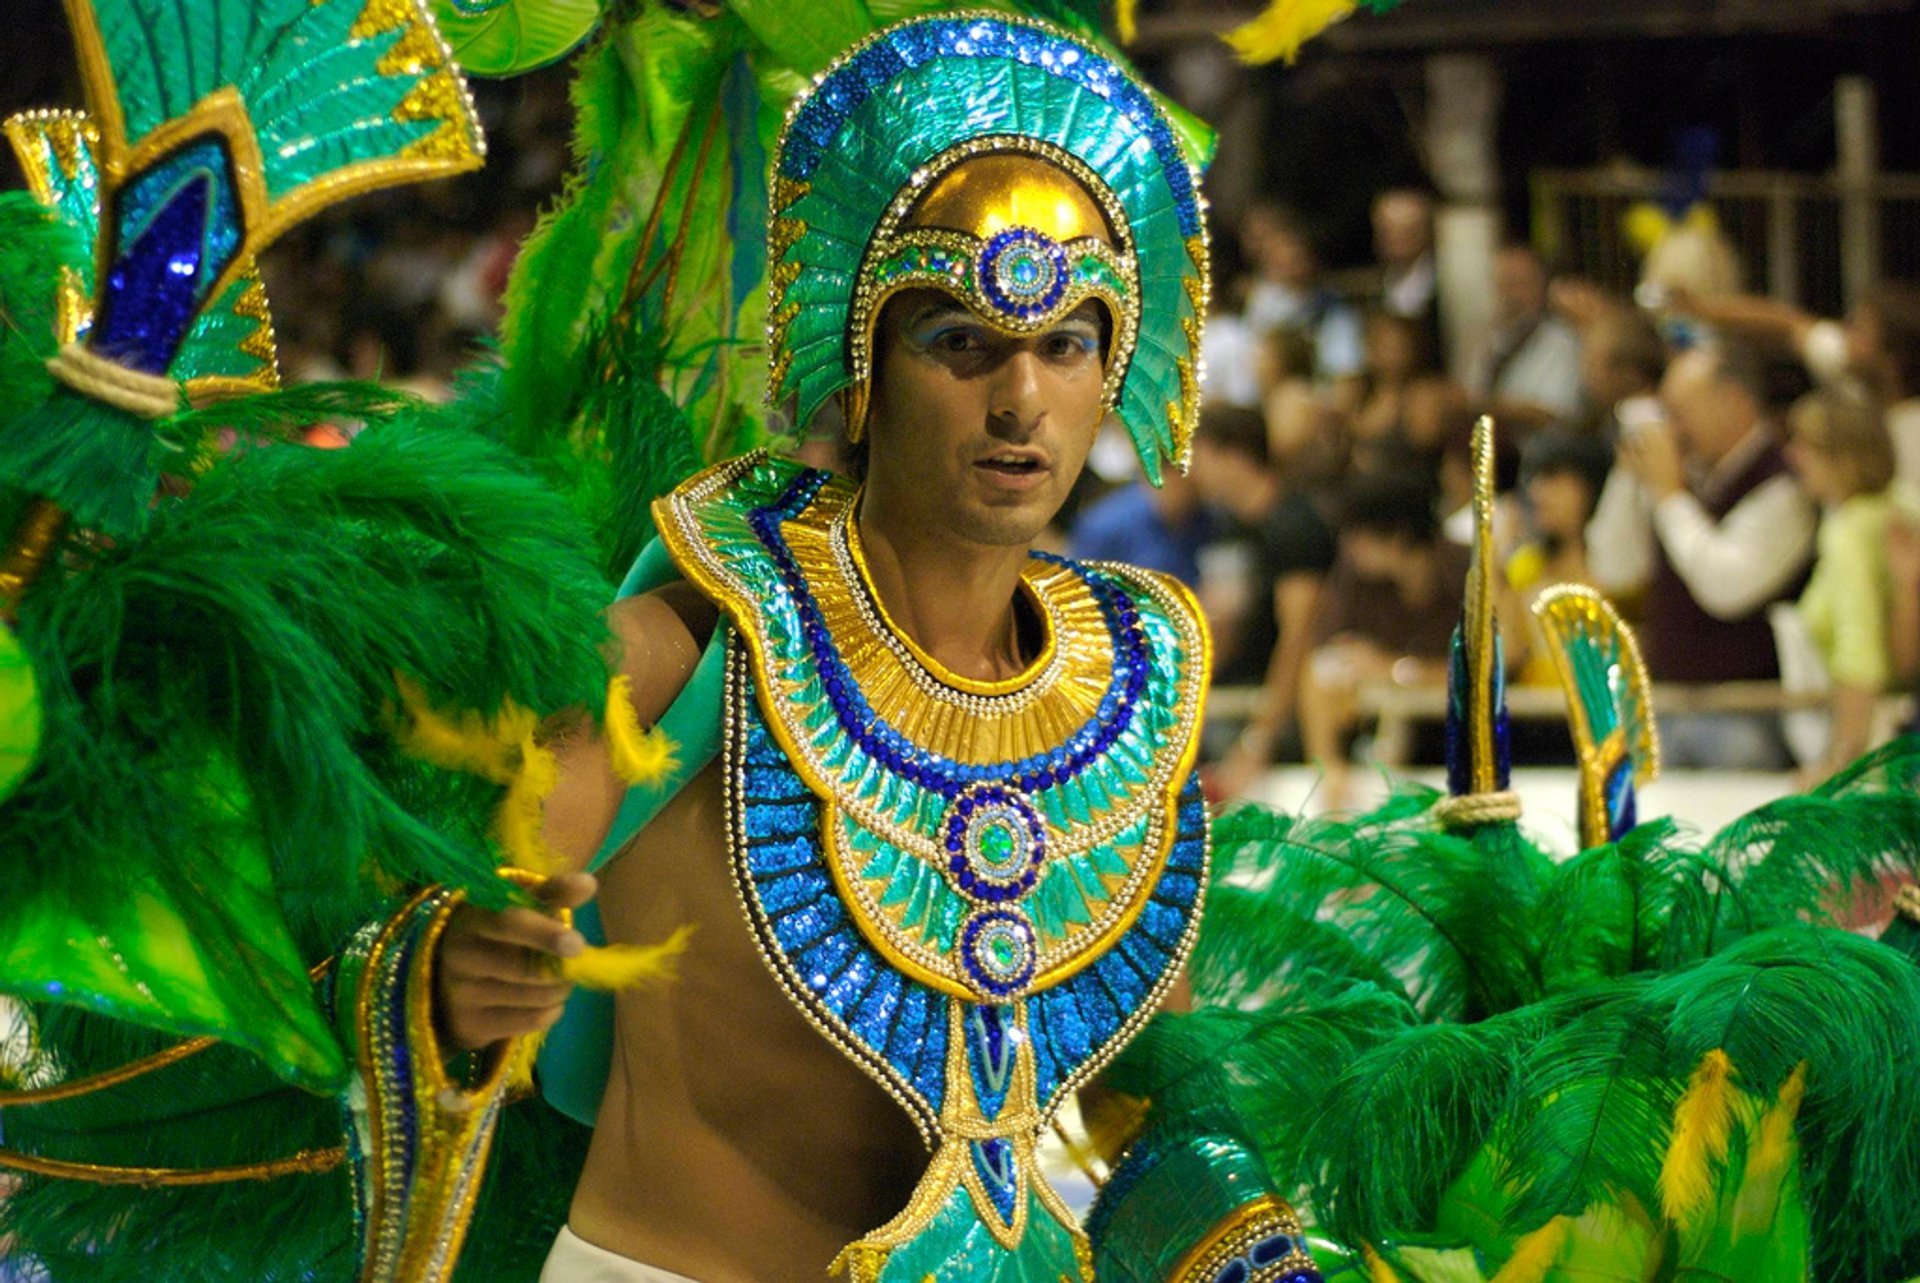 Carnaval del País in Gualeguaychú